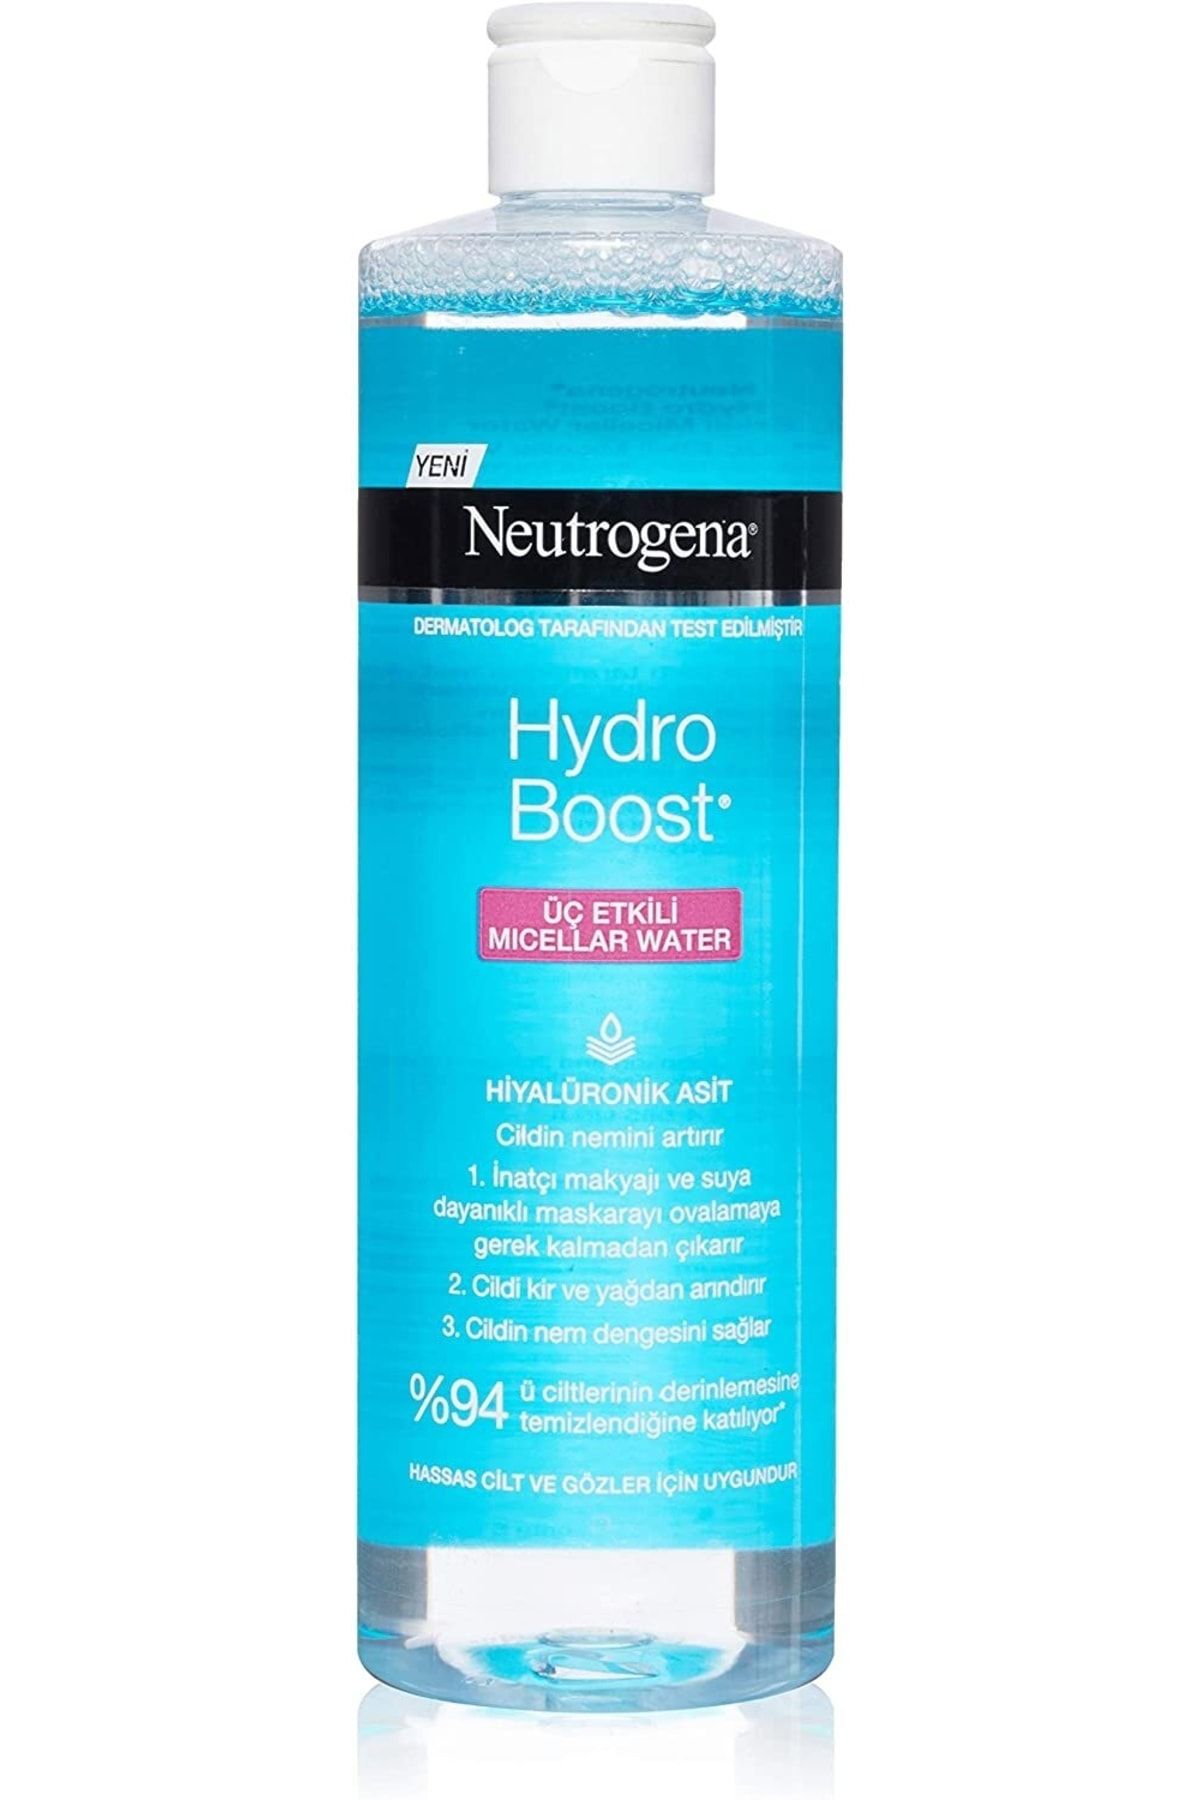 Neutrogena Hydro Boost Üç Etkili Micellar Water, 400 ml